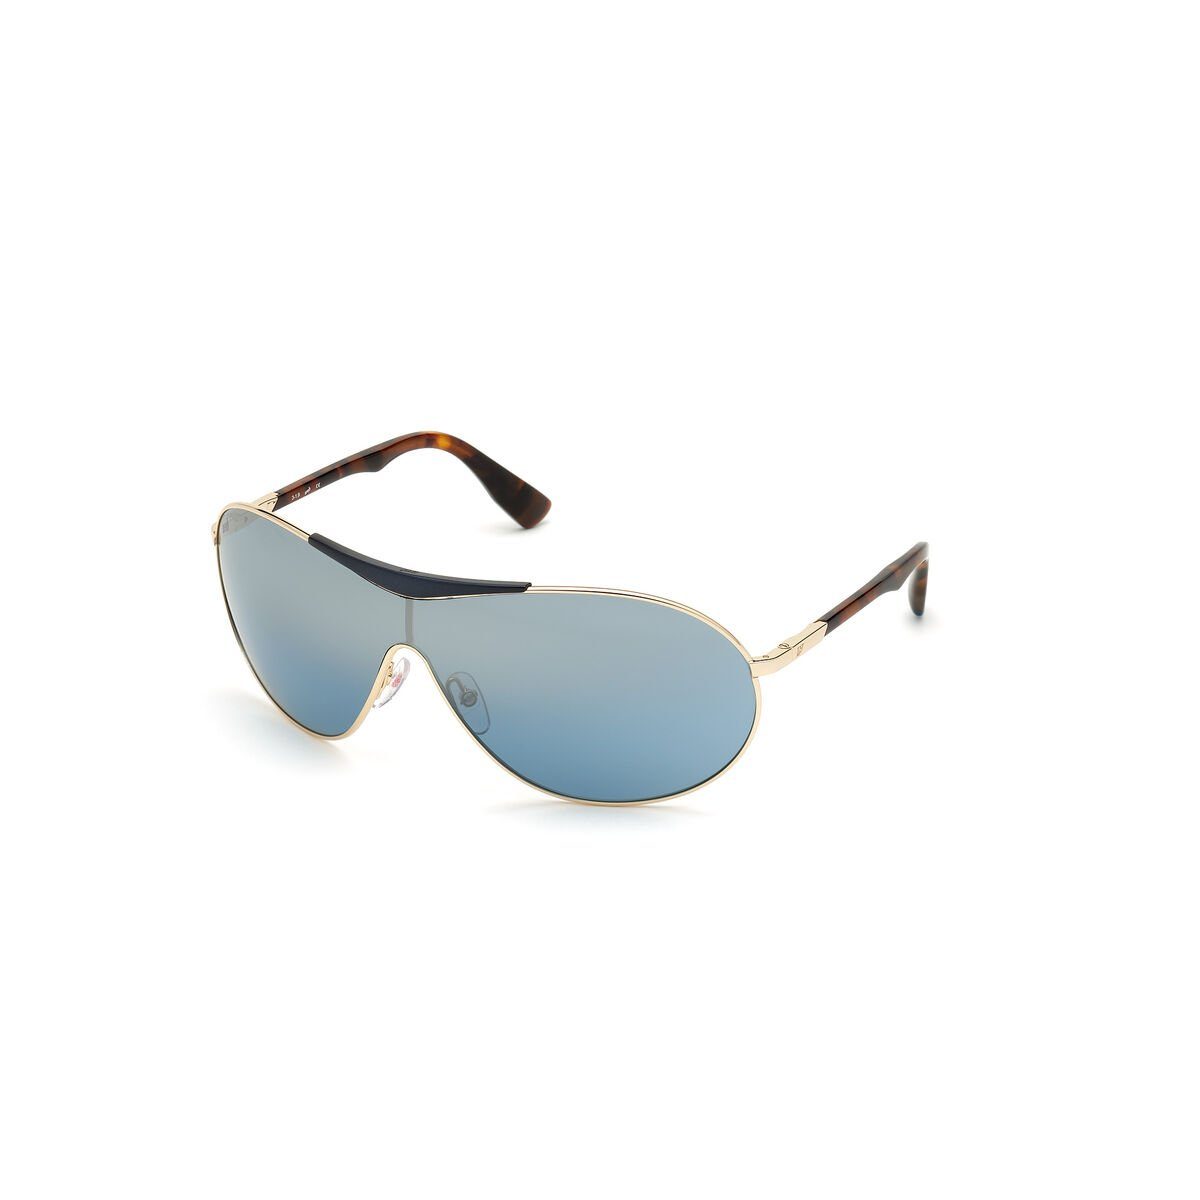 WE0282-0032X EYEWEAR Eyewear WEB Web Herrensonnenbrille Sonnenbrille UV400